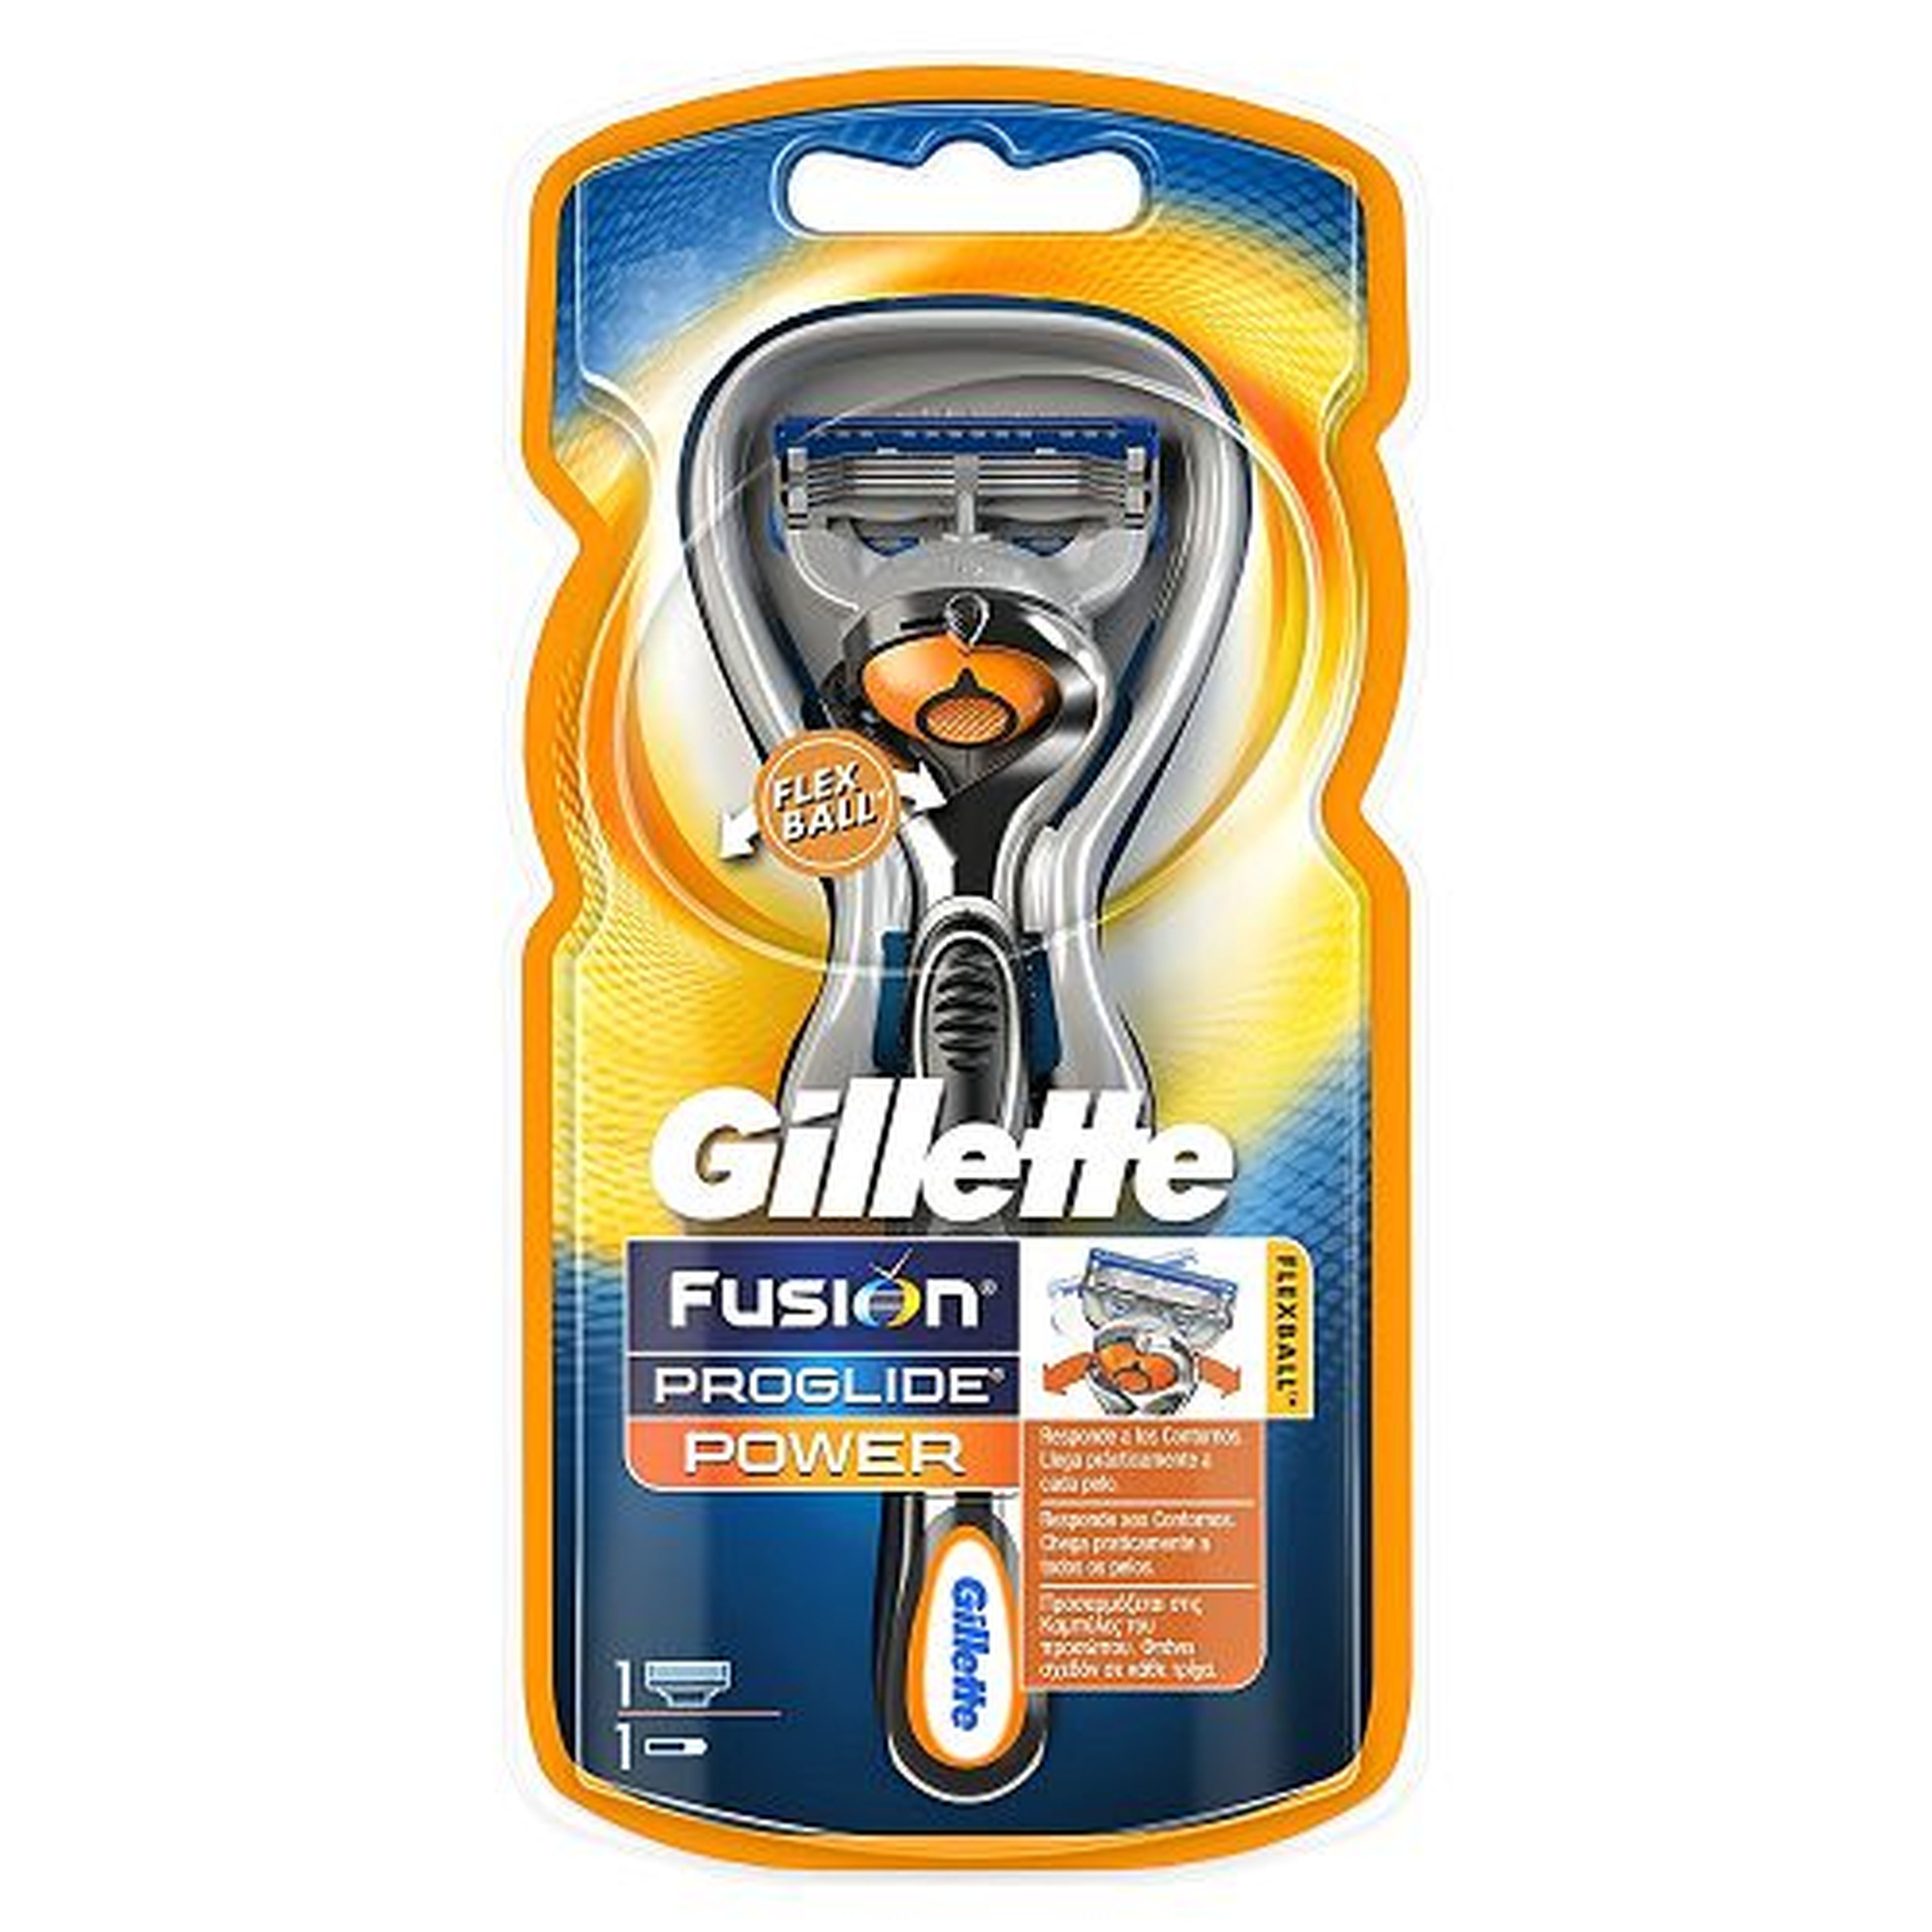 La maquinilla de afeitar Gillette Fusion ProGlide Power